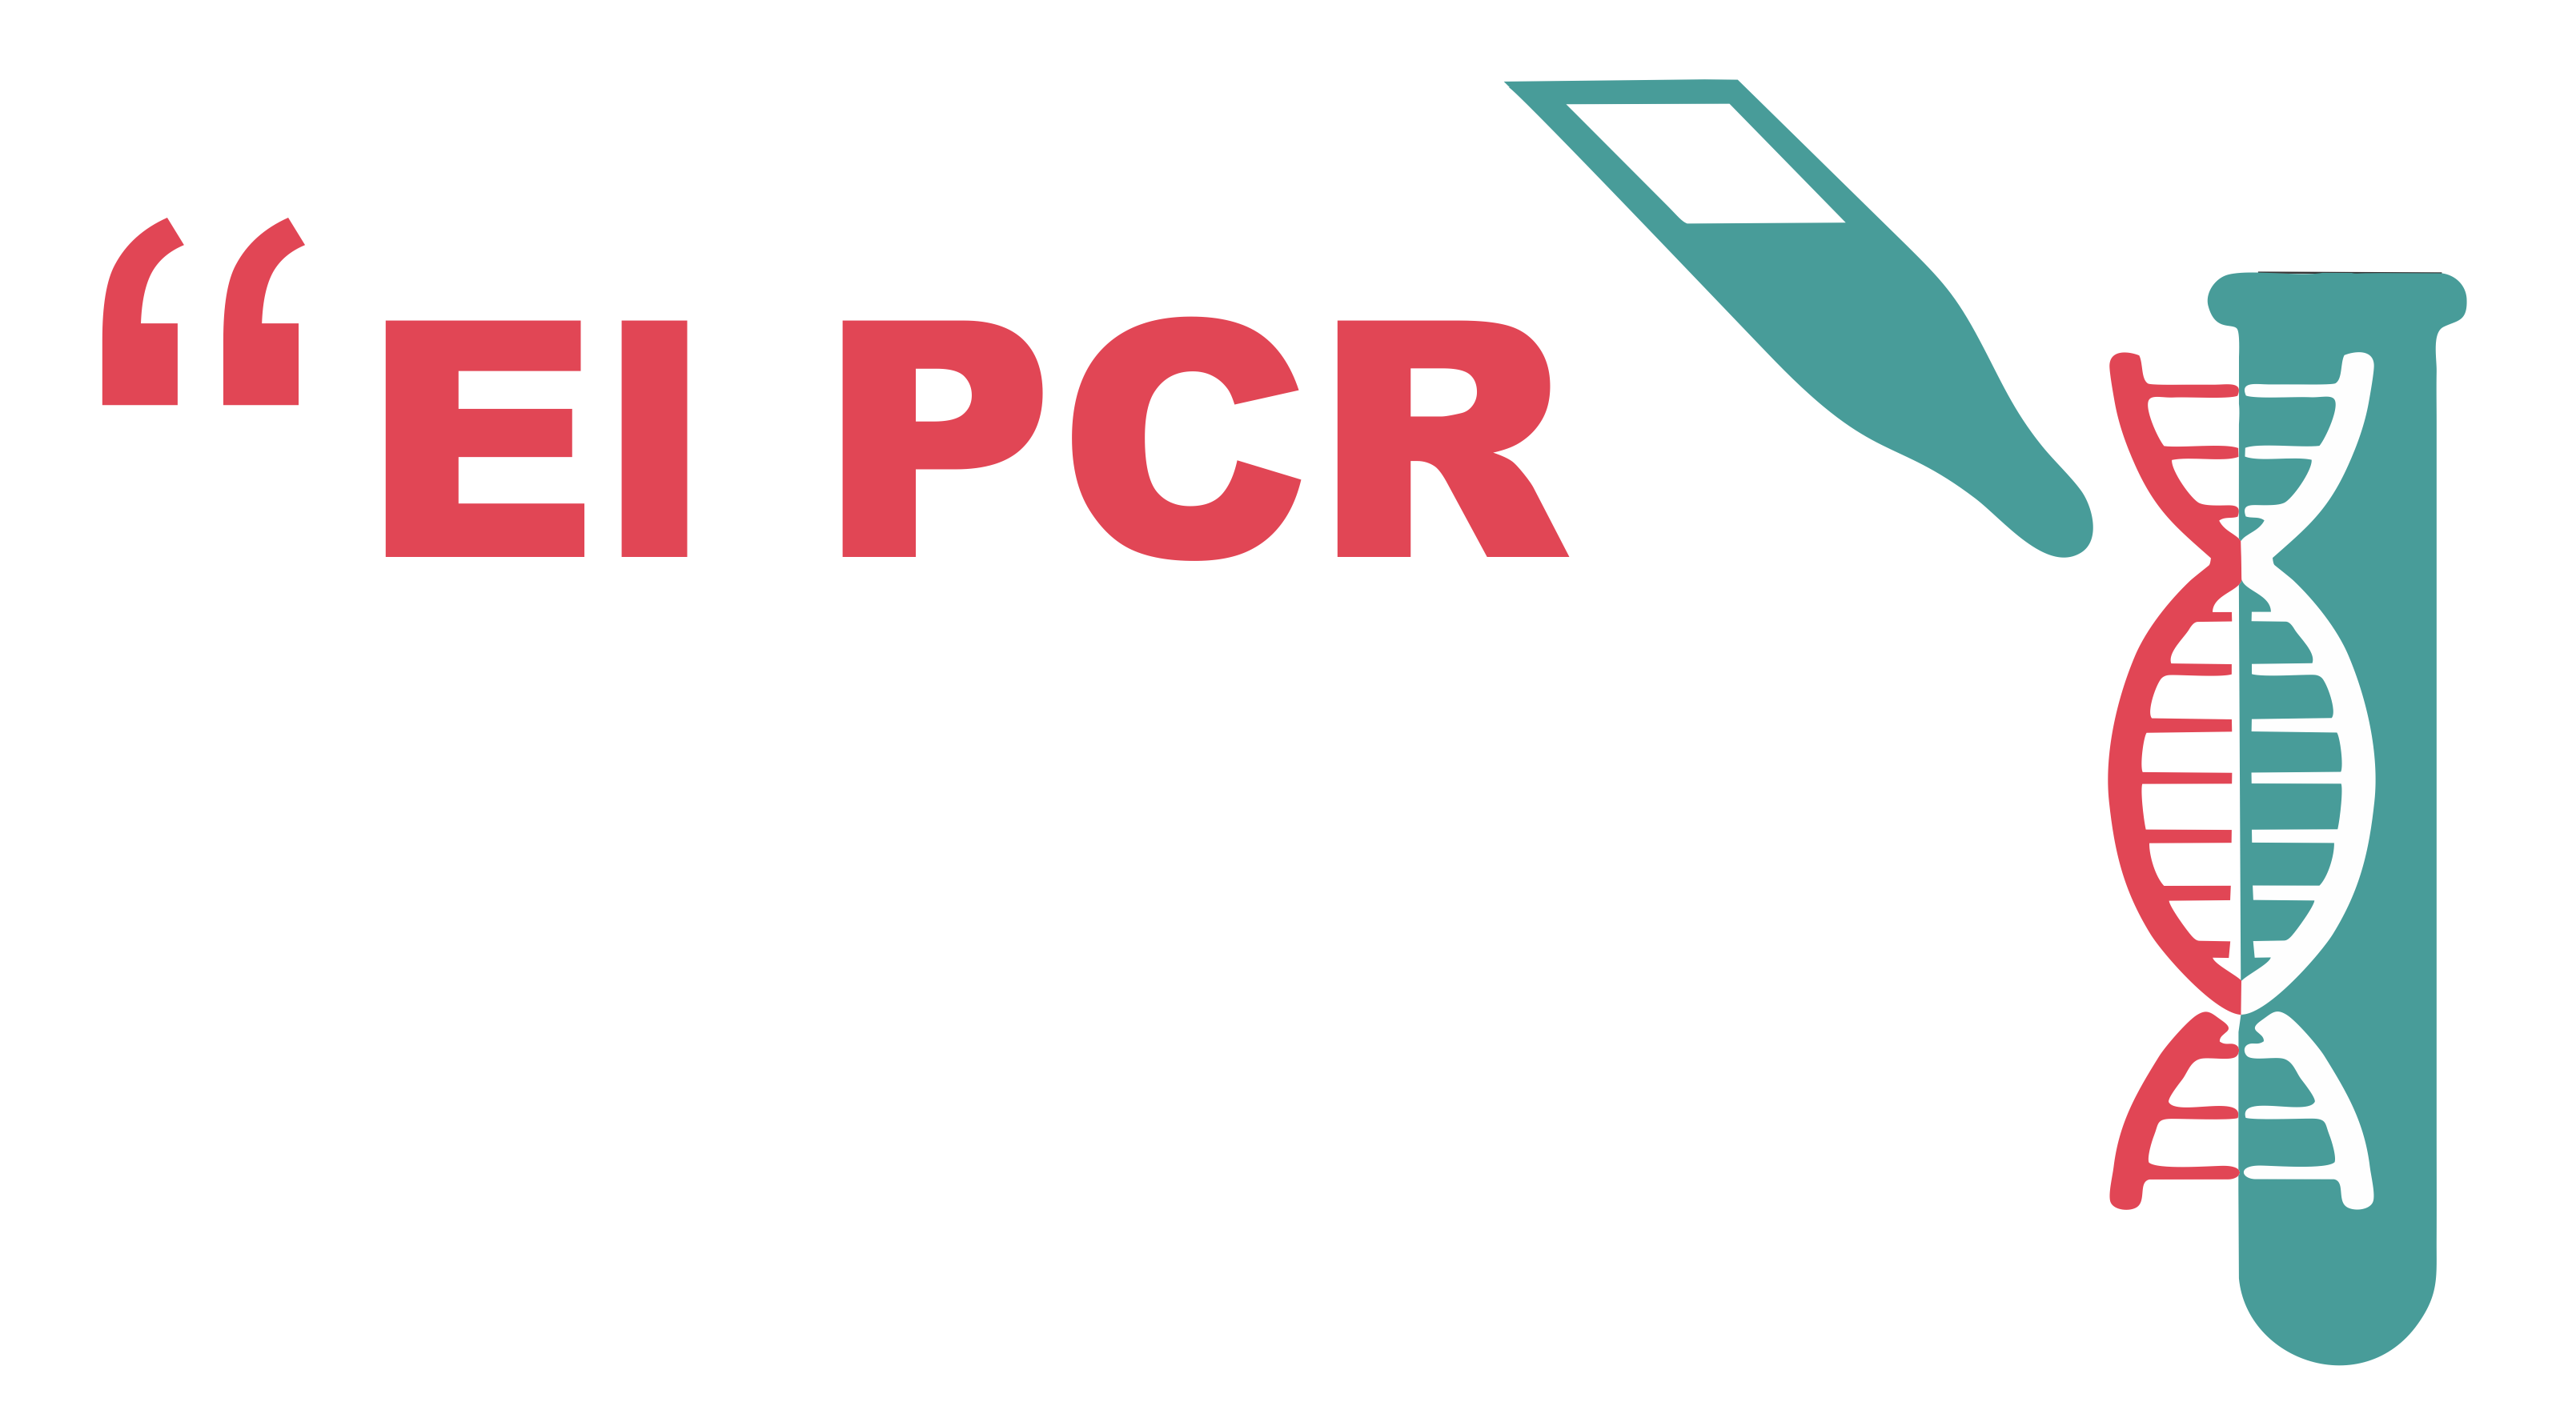 Prueba PCR